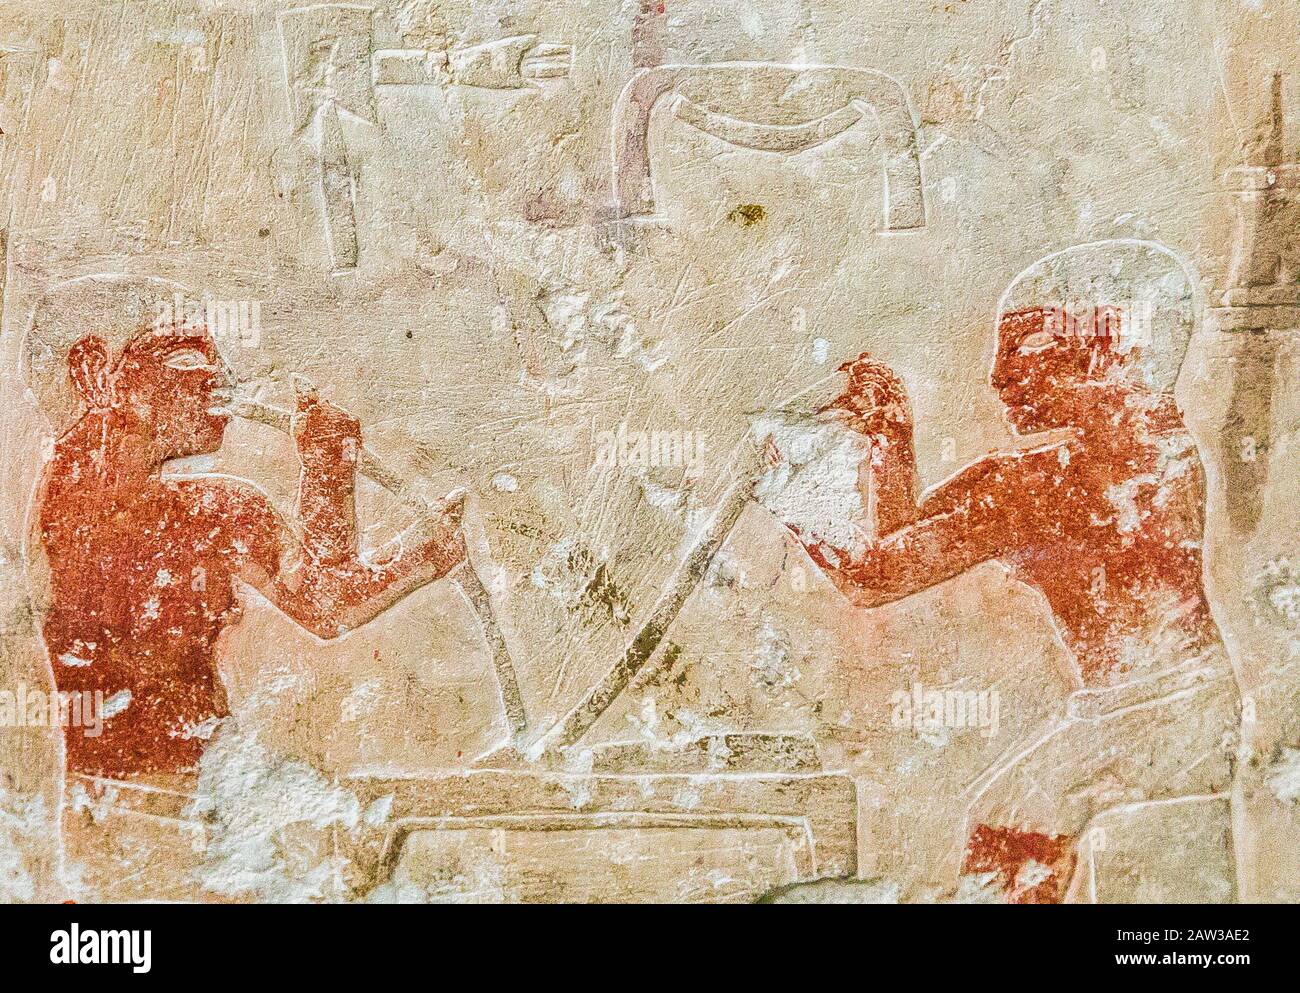 Cairo, Museo Egizio, dalla tomba di Kaemrehu, Saqqara, particolare di un rilievo raffigurante artigiani: Orafi nano versano l'oro in una muffa. Foto Stock